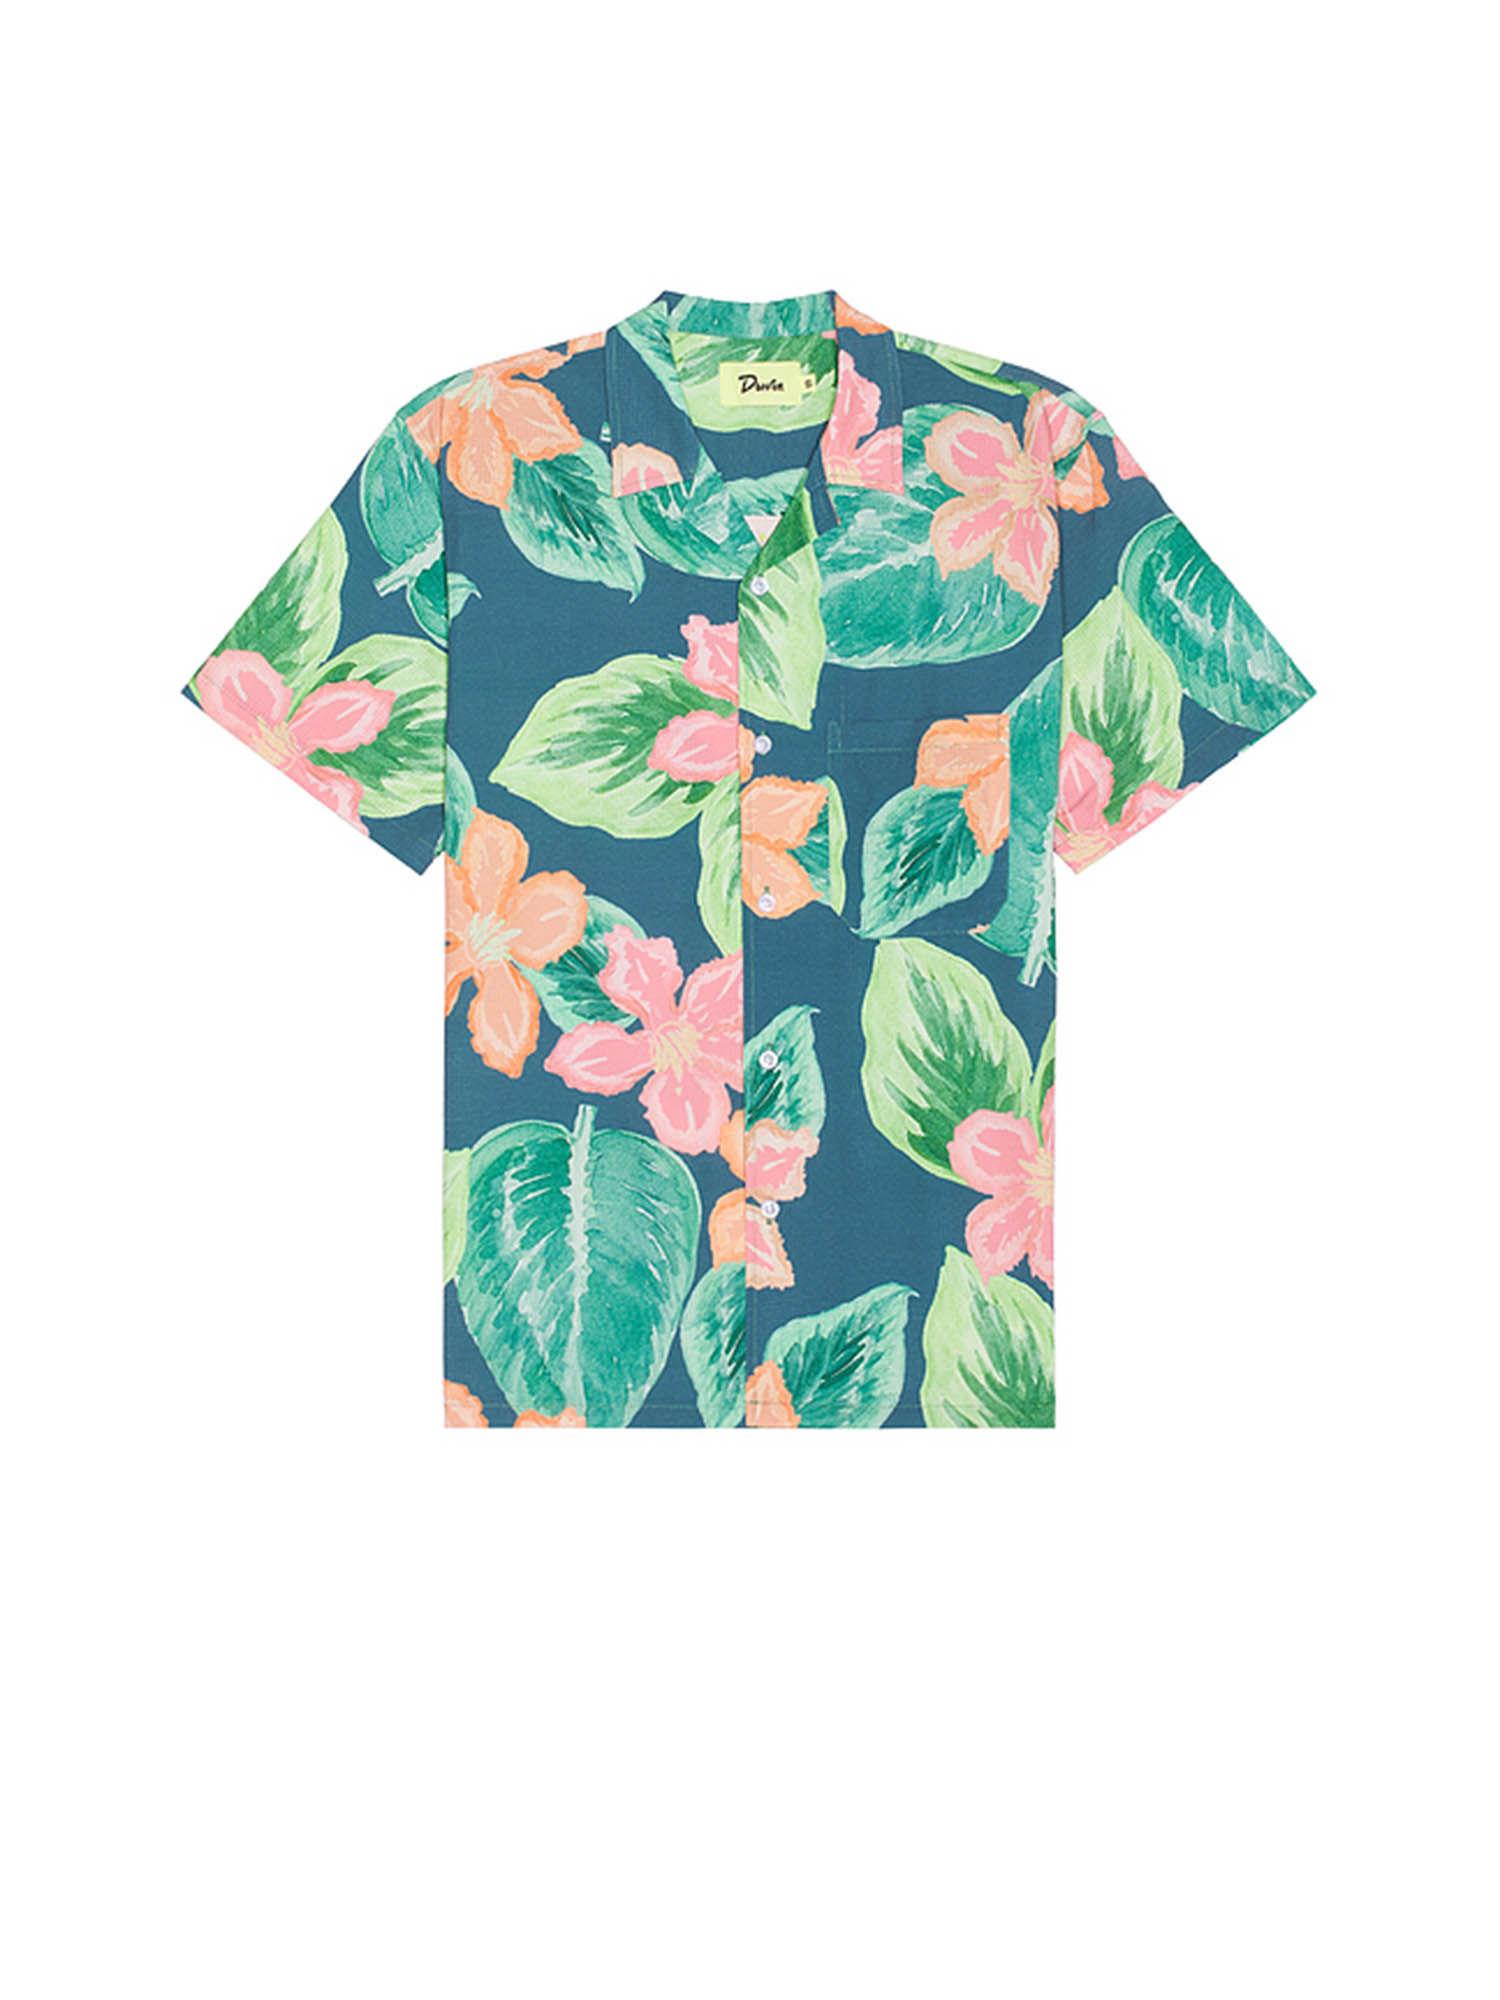 spring garden shirt